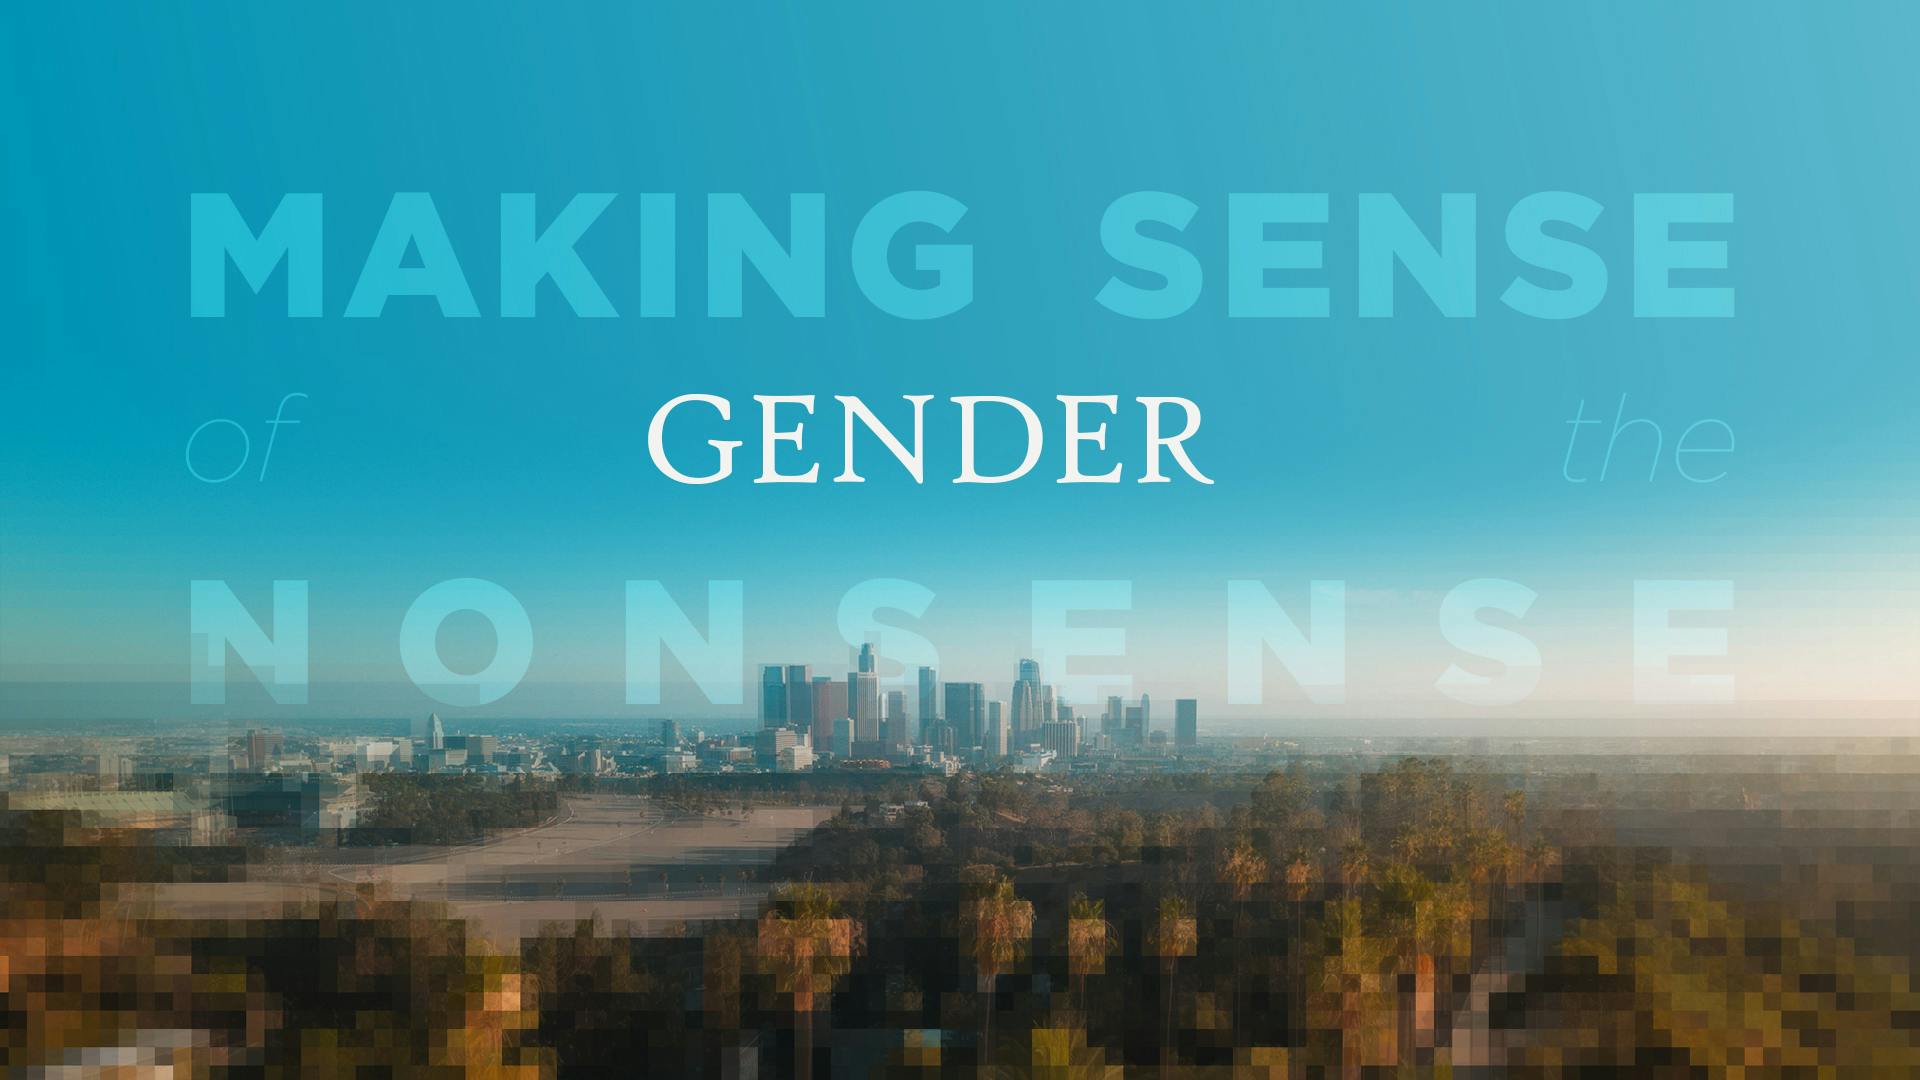 MSOTN 9 - Gender cover for post